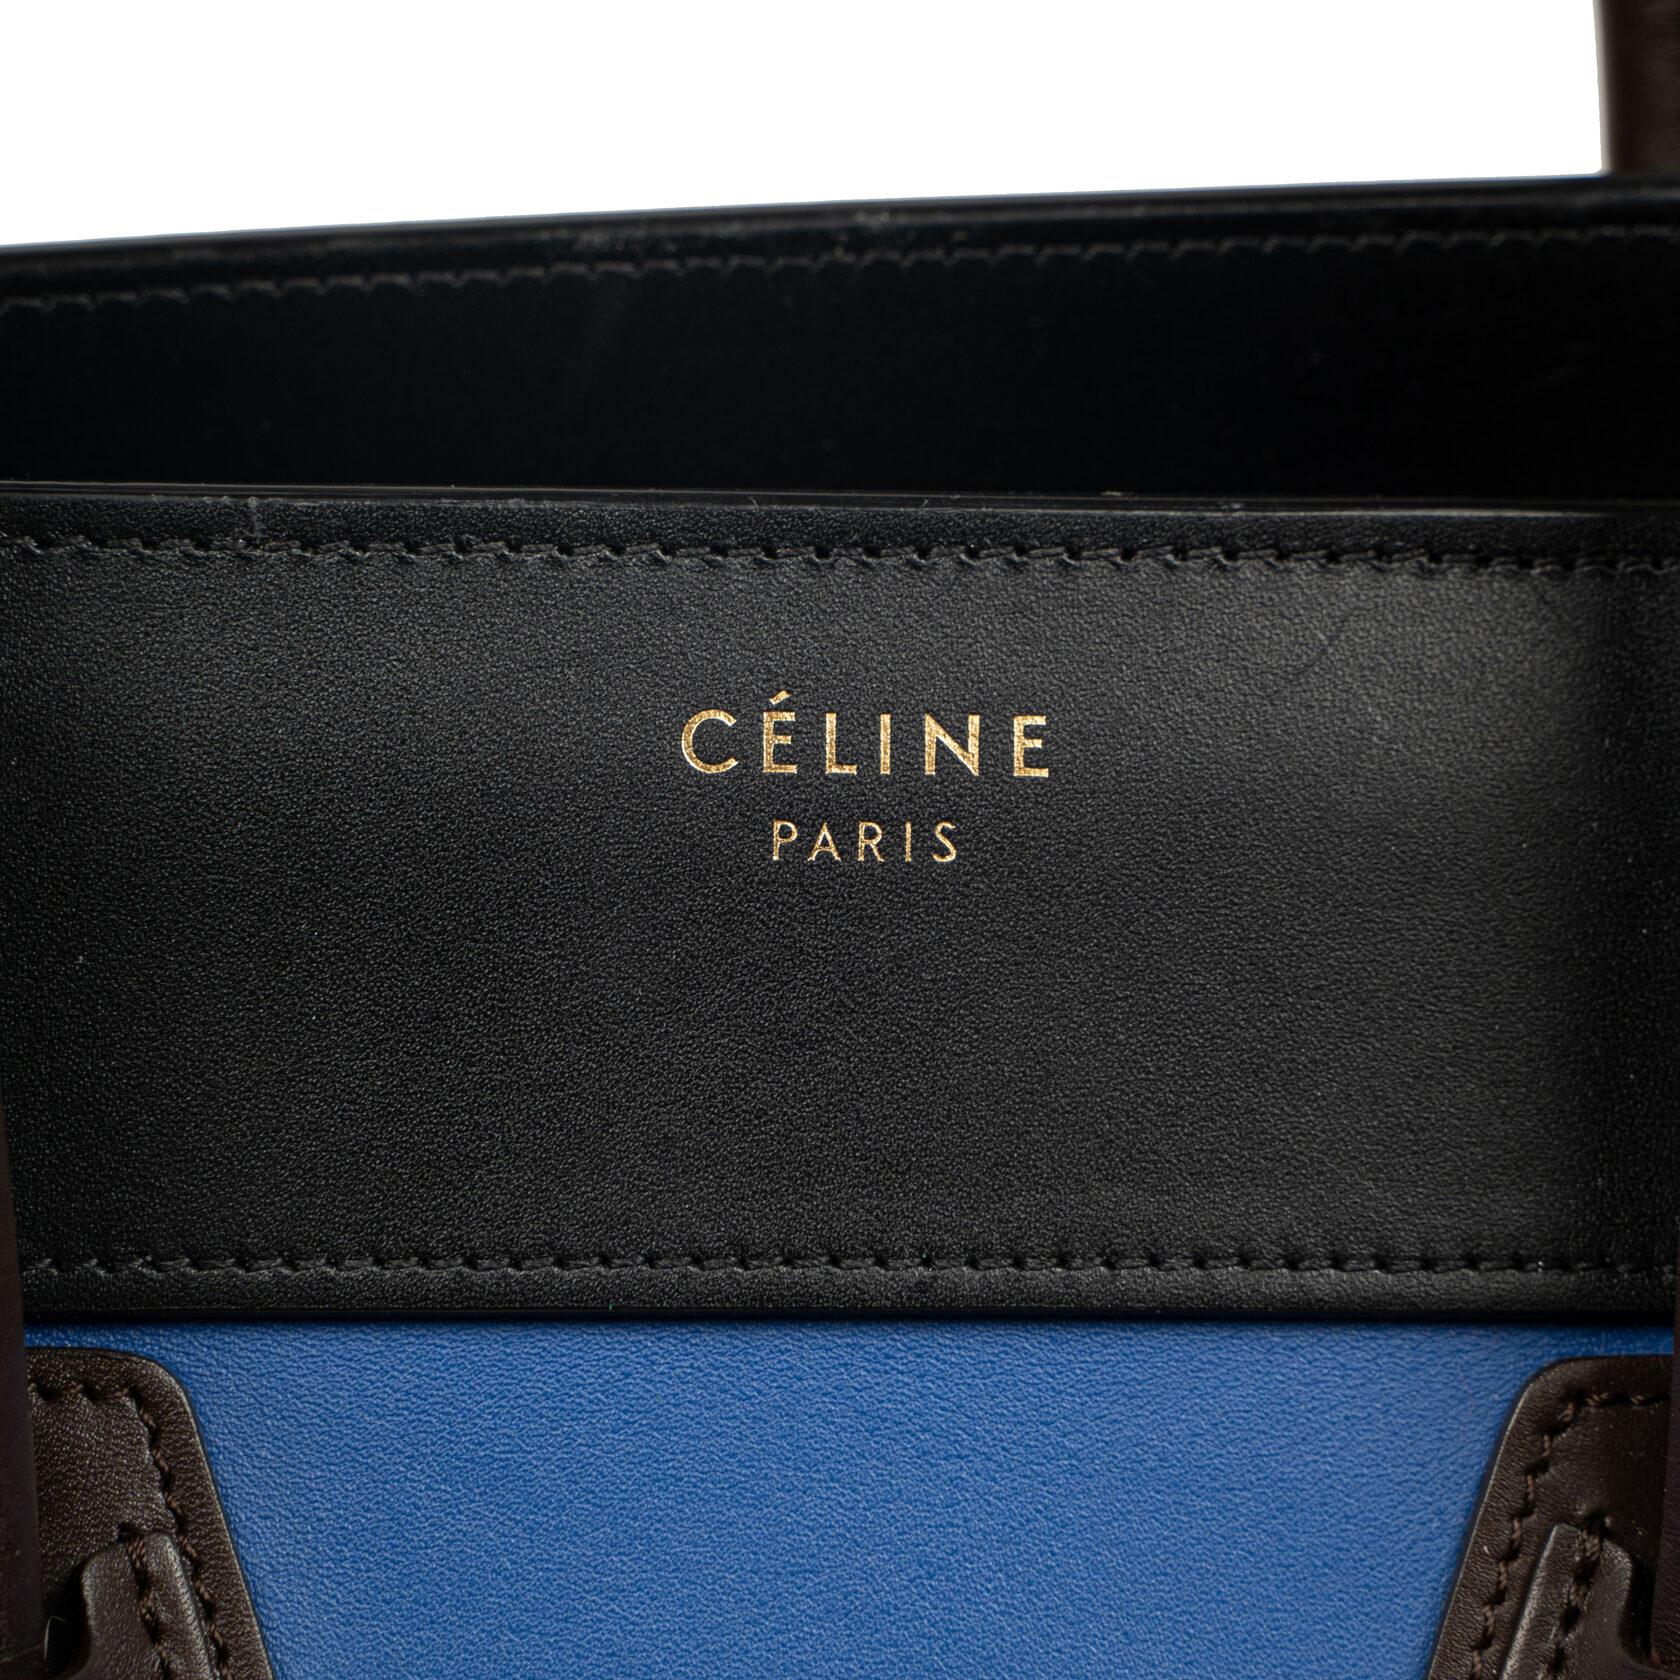 Celine Luggage Mini In Good Condition For Sale In Dover, DE